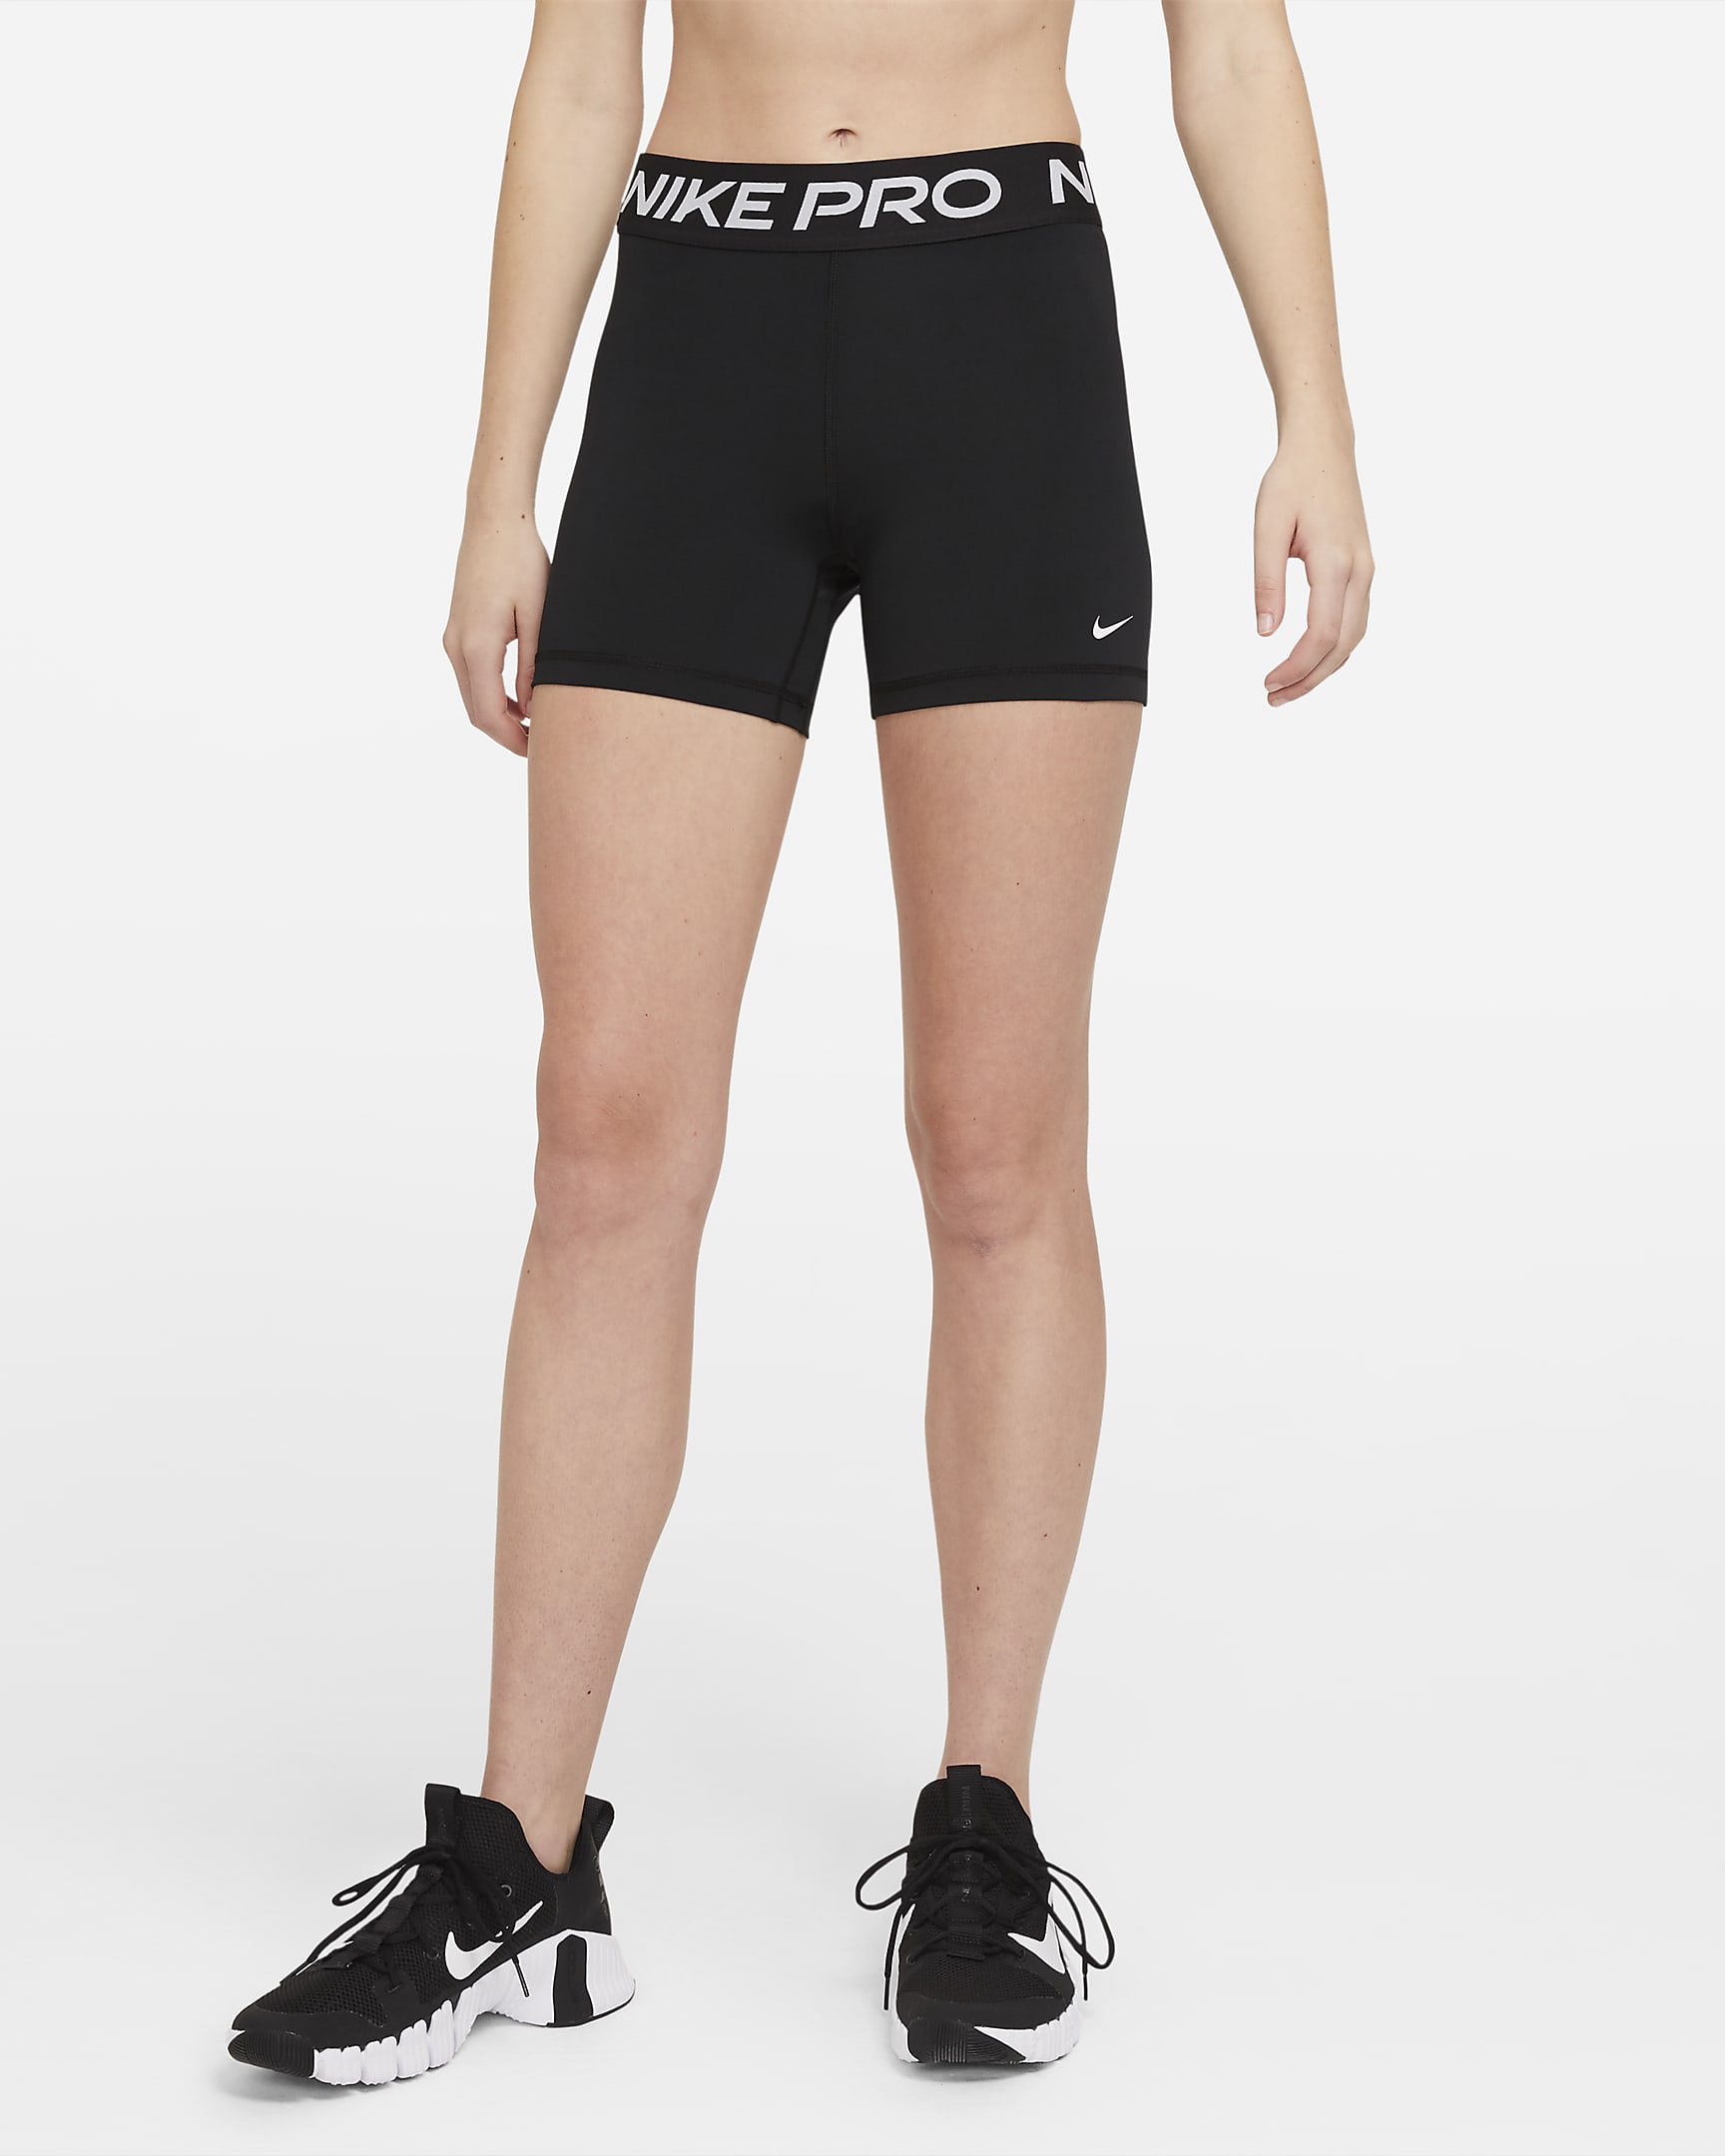 Dámské 13 cm kraťasy Nike Pro 365 - Černá/Bílá